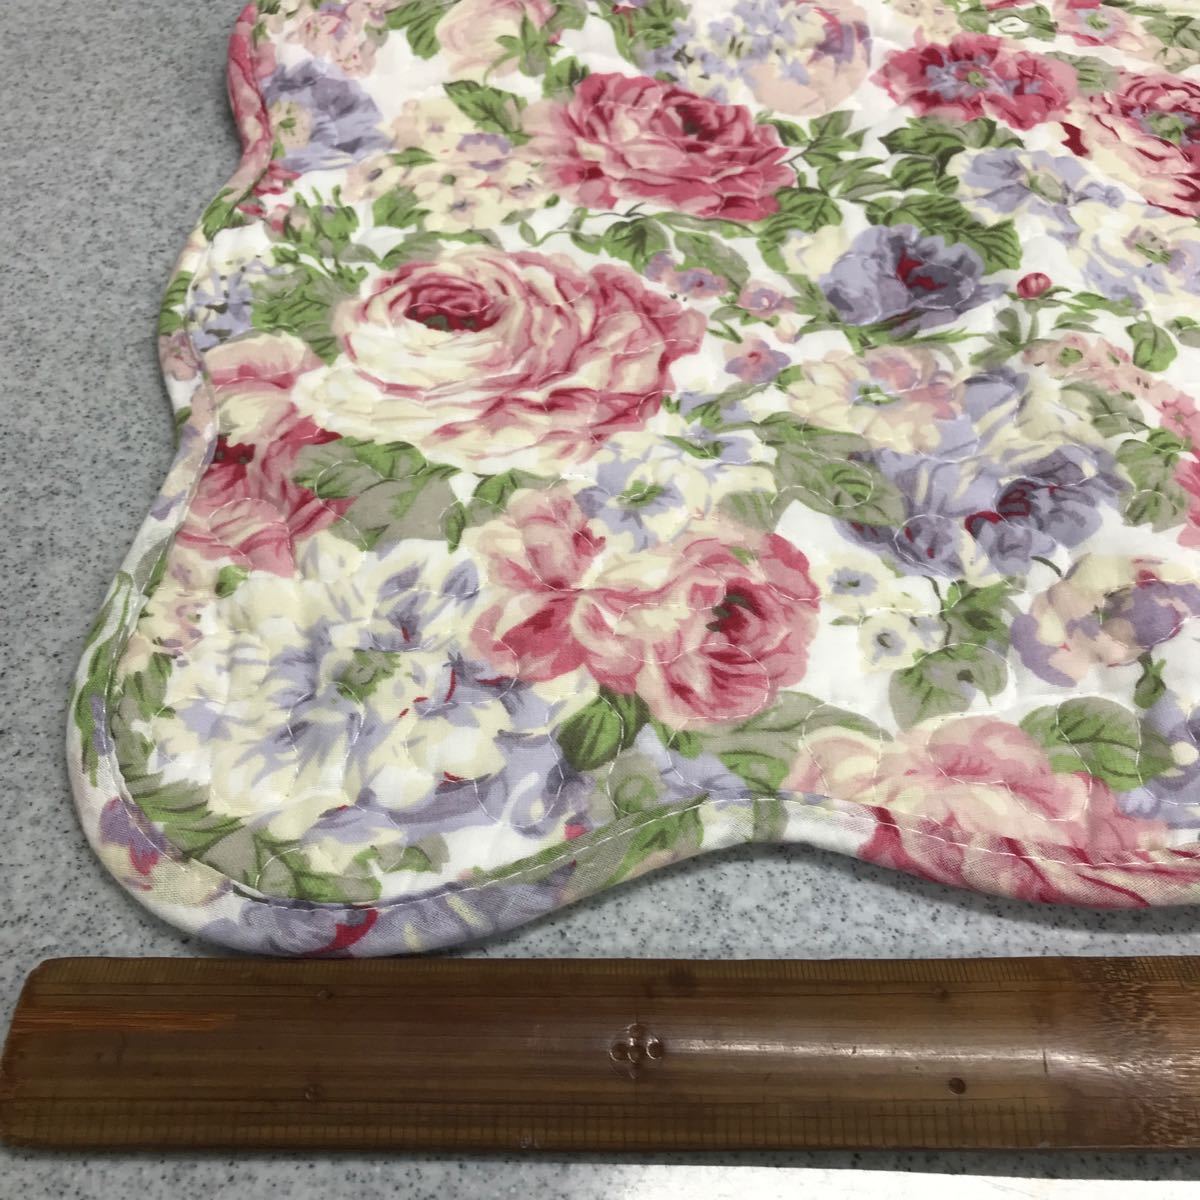  новый товар чехол на подушку для сидения стеганый ткань роза рисунок хлопок 100% 55×59... штамп клик post 